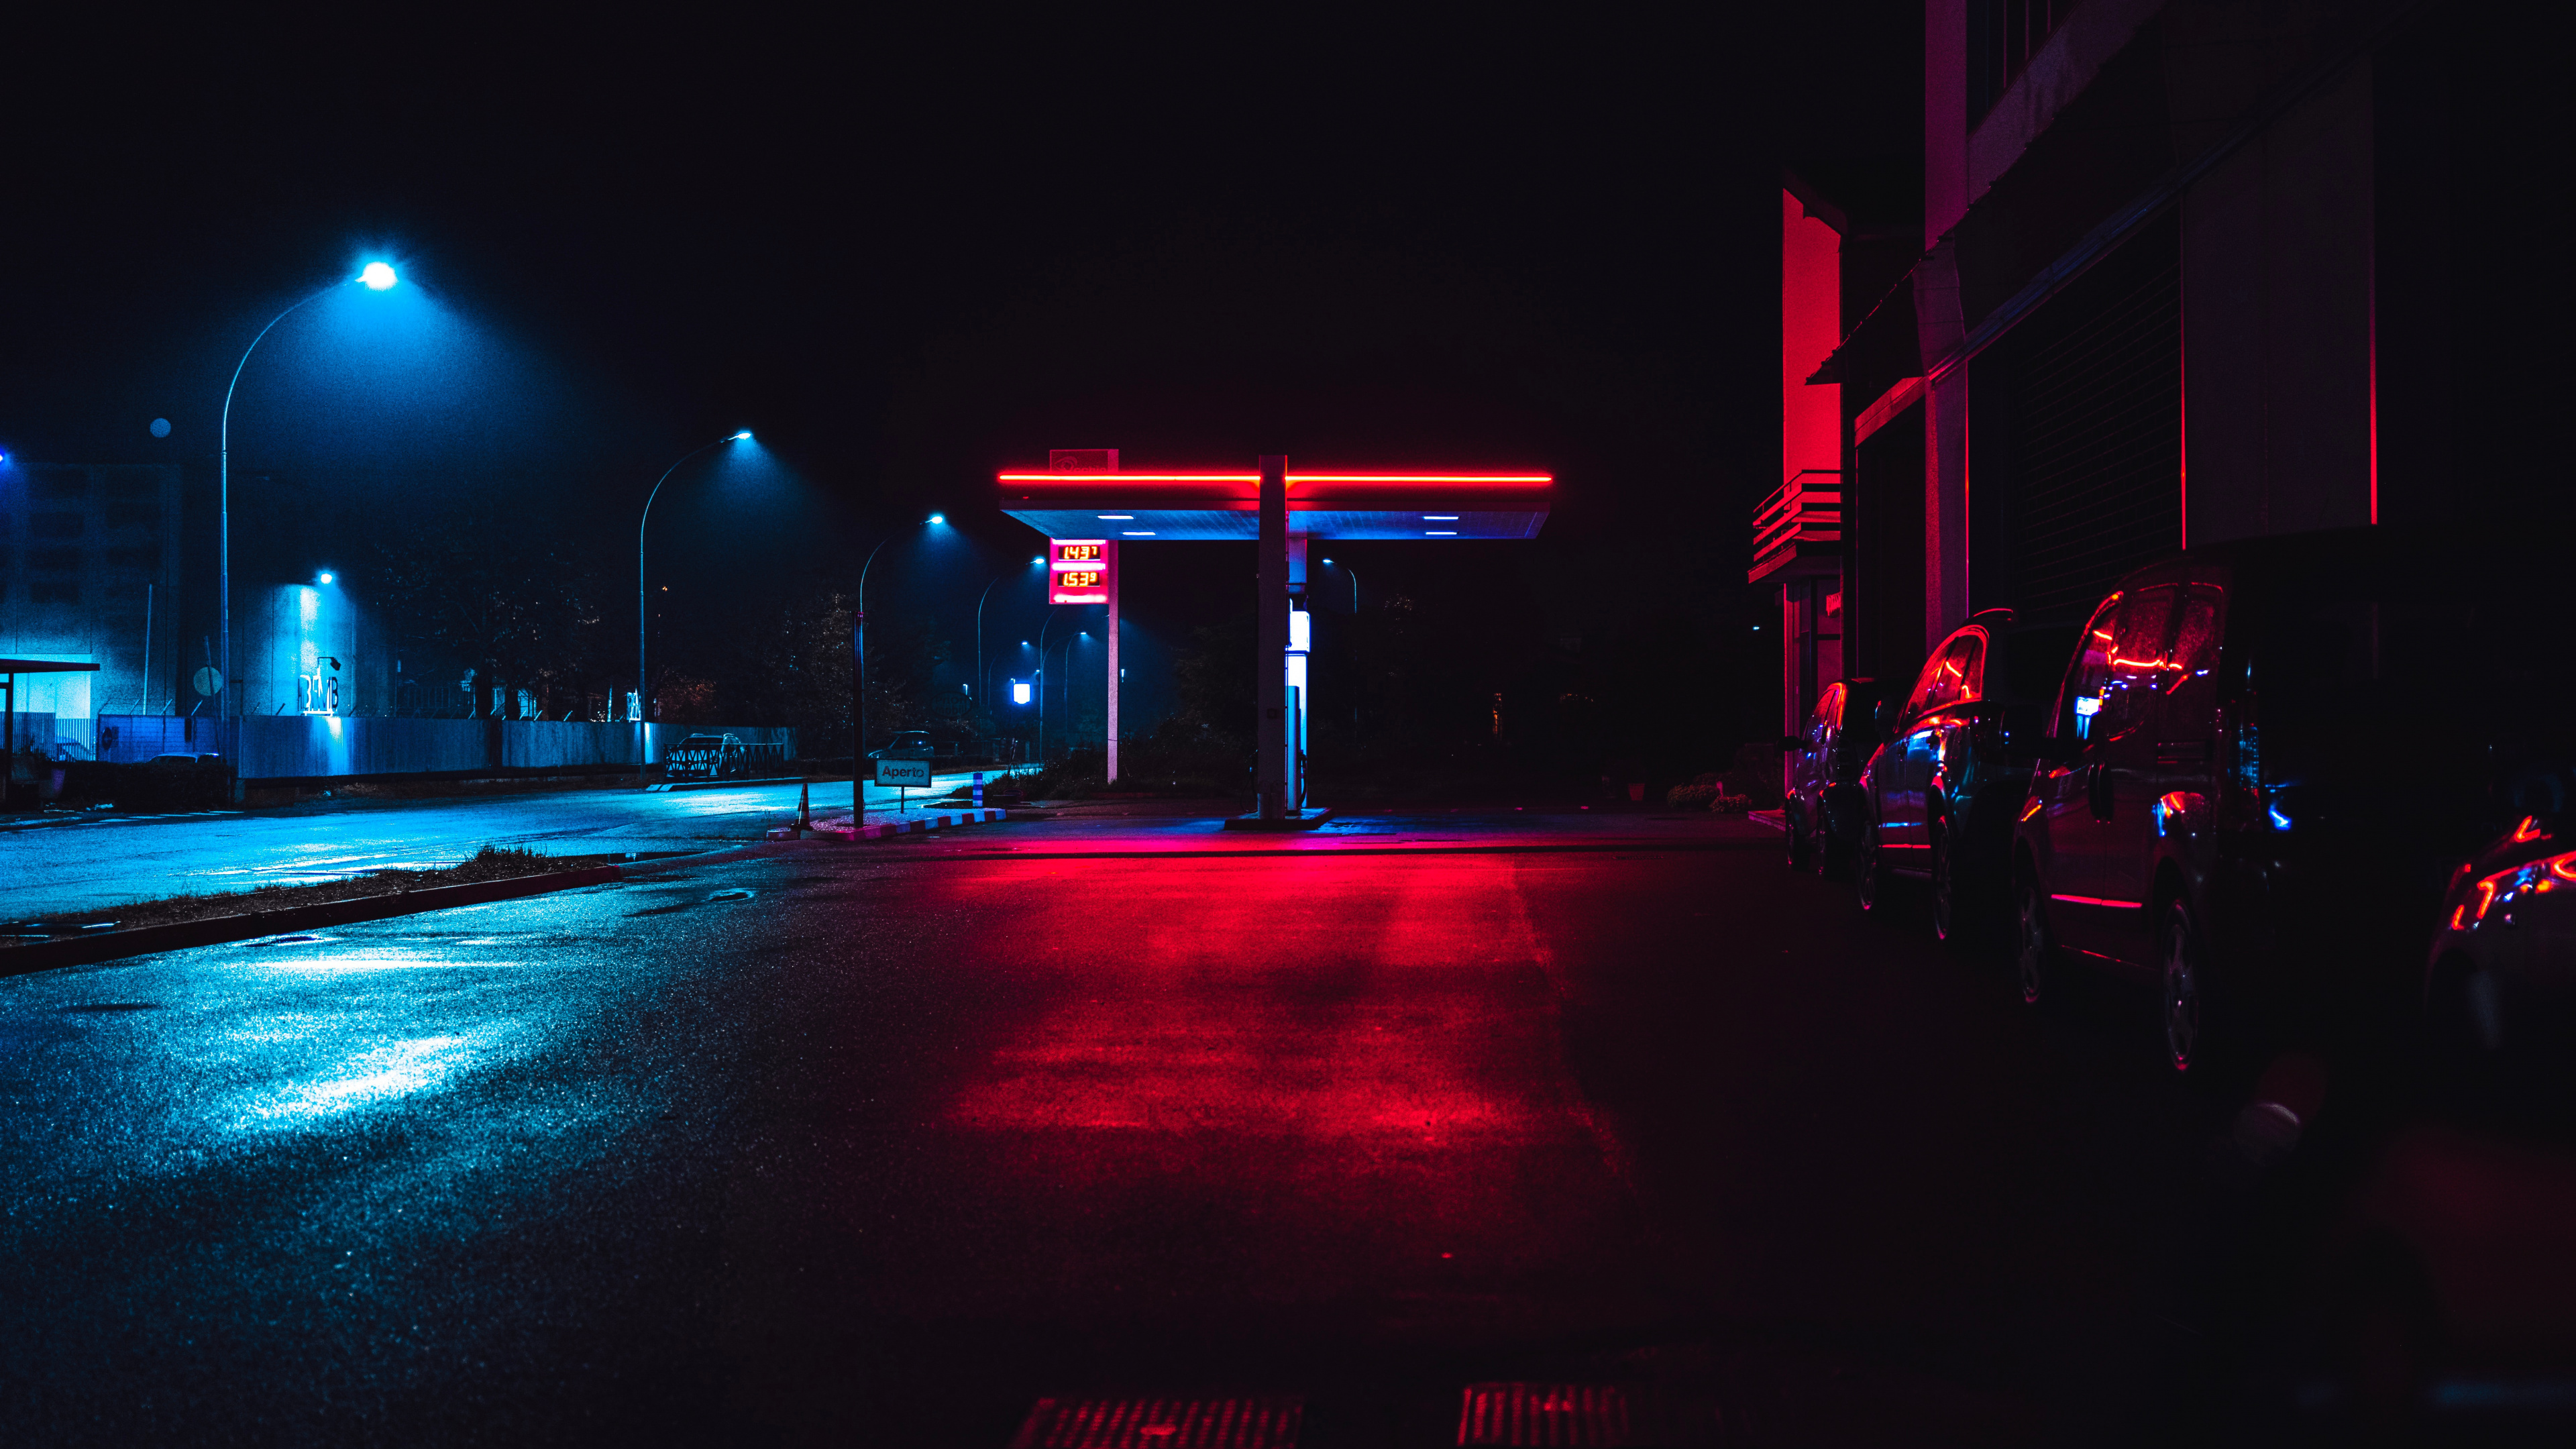 Automóviles Estacionados al Costado de la Carretera Durante la Noche. Wallpaper in 3840x2160 Resolution